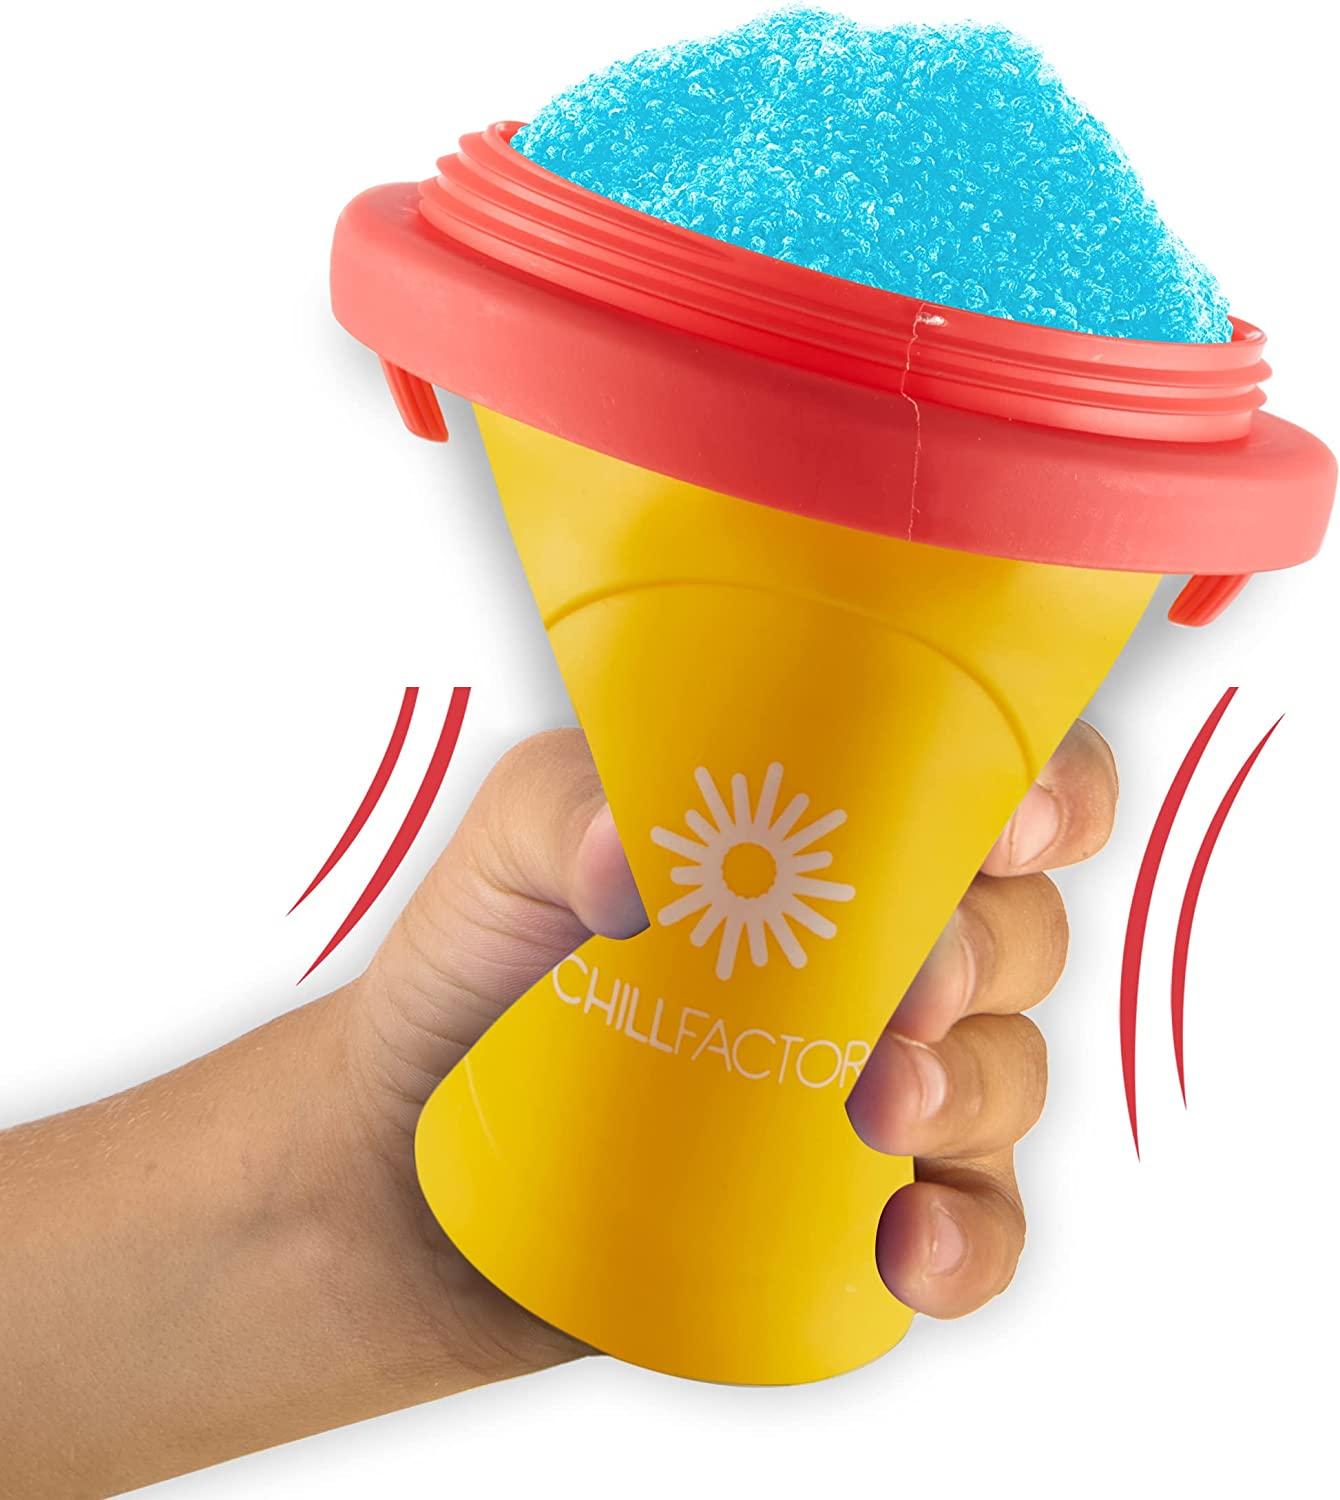 ChillFactor MANGO MANIA Reusable, Homemade Squeeze Cup slushy Maker